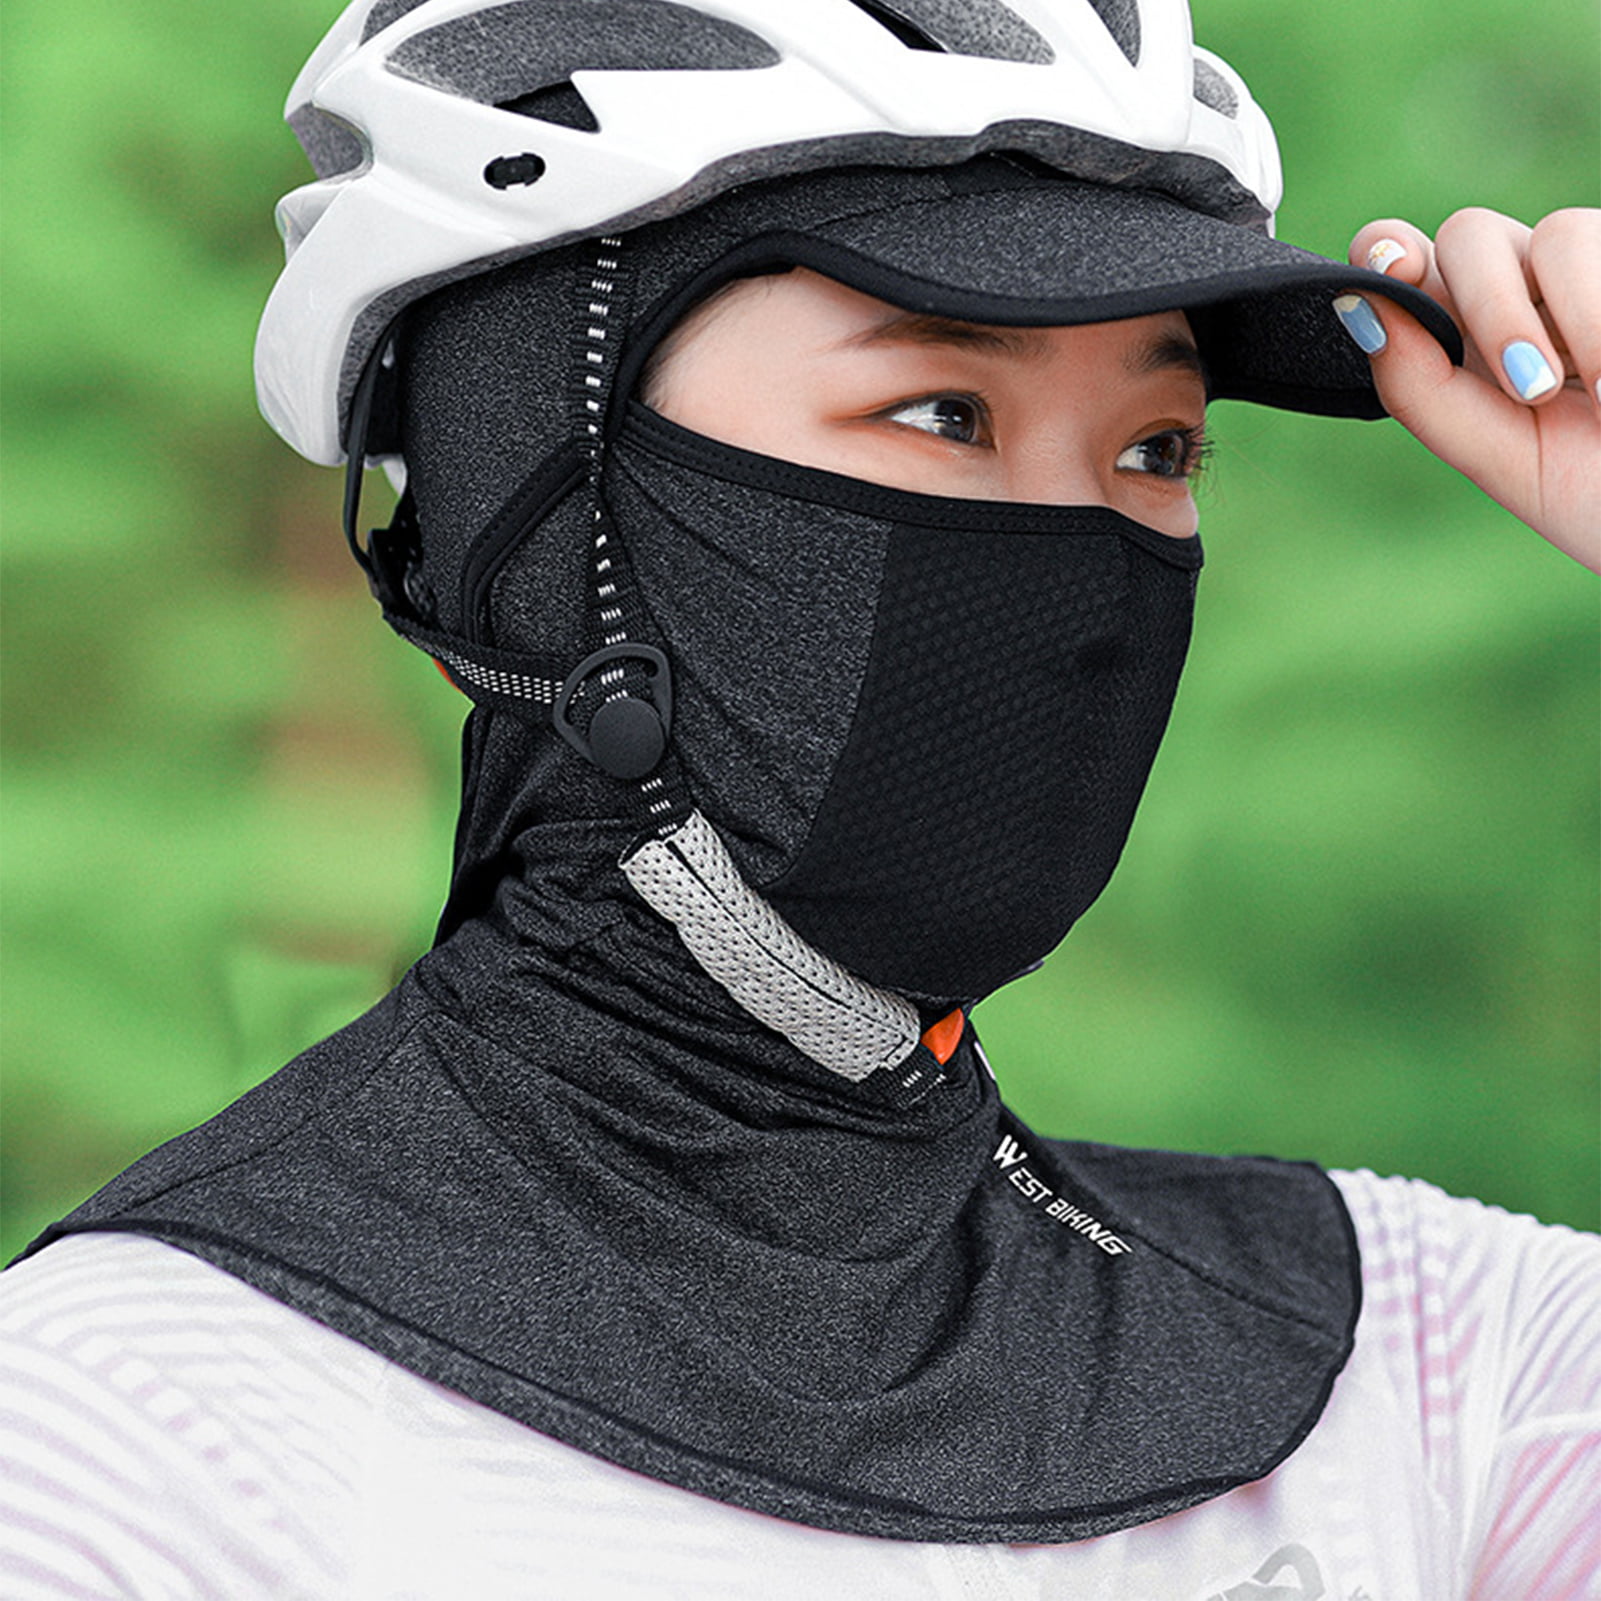 Wheel Up Printing Breathable Outdoor Riding Cycling Cap Sports Bandana Hats